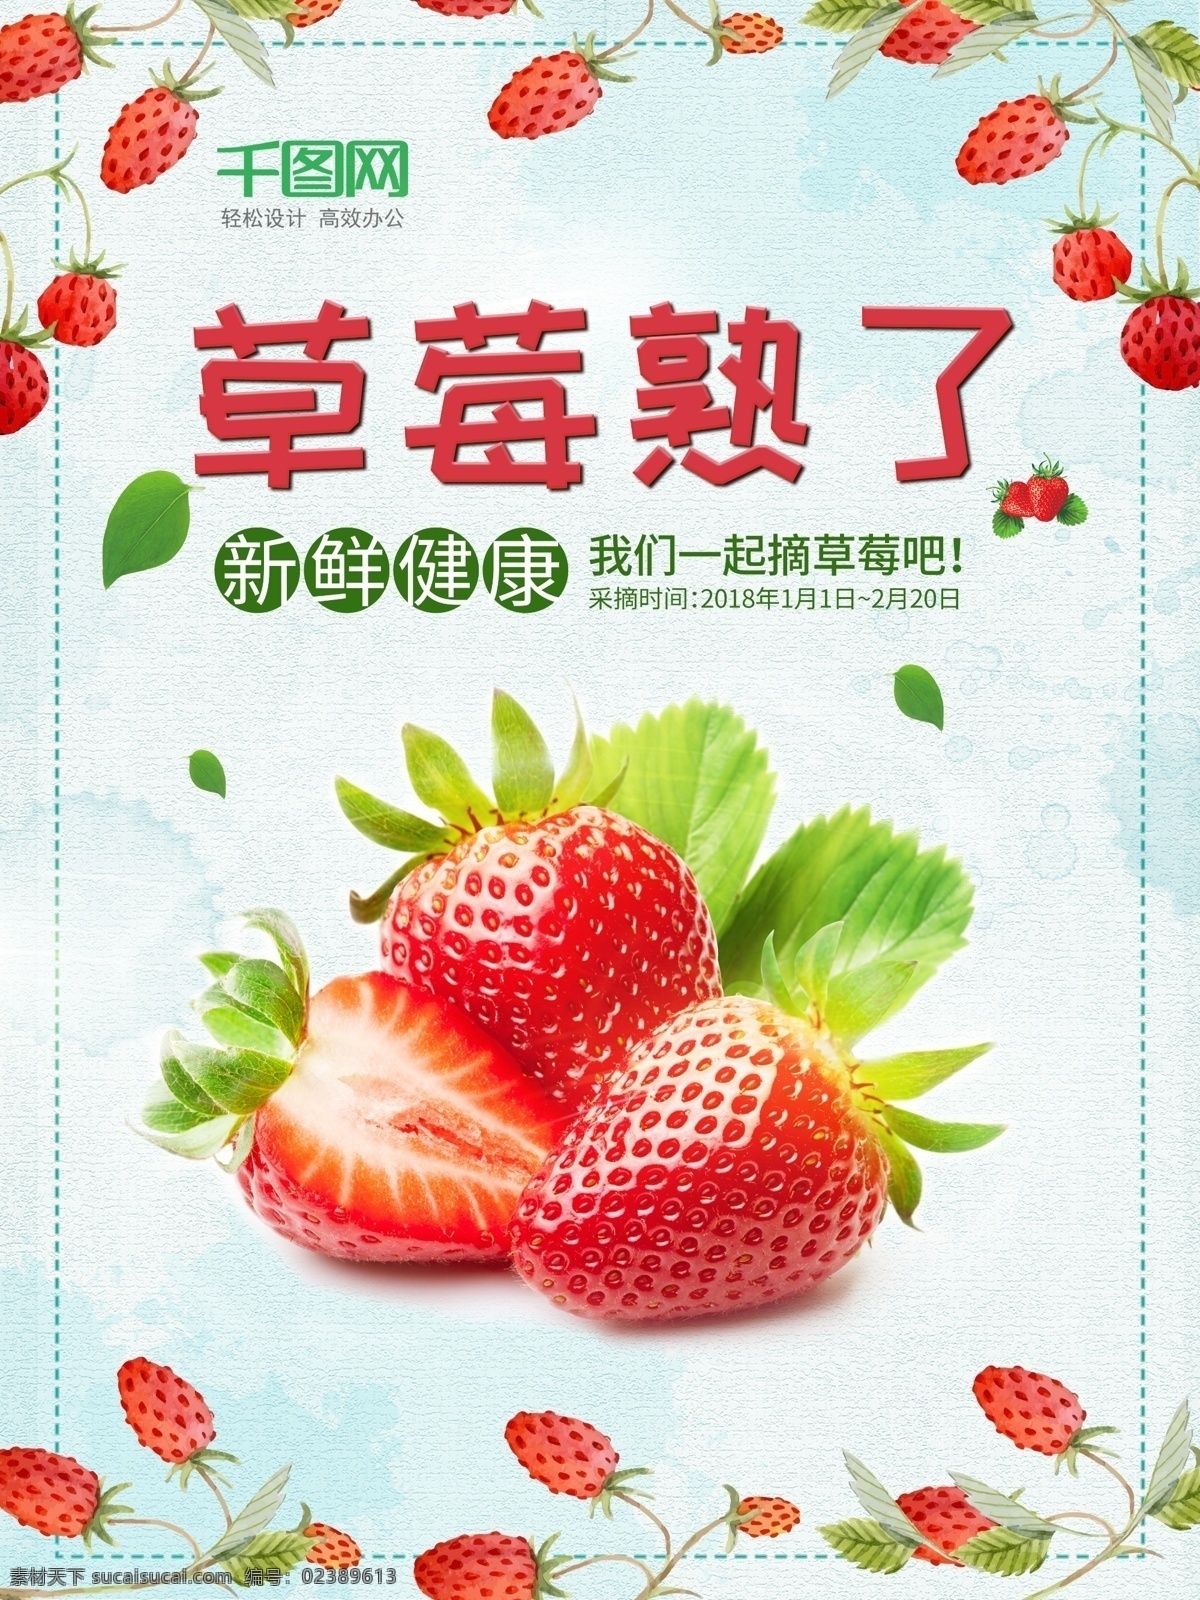 草莓 清新 海报 模板 简洁 健康 蓝色 美食 时尚 水果促销 新鲜 摘草莓